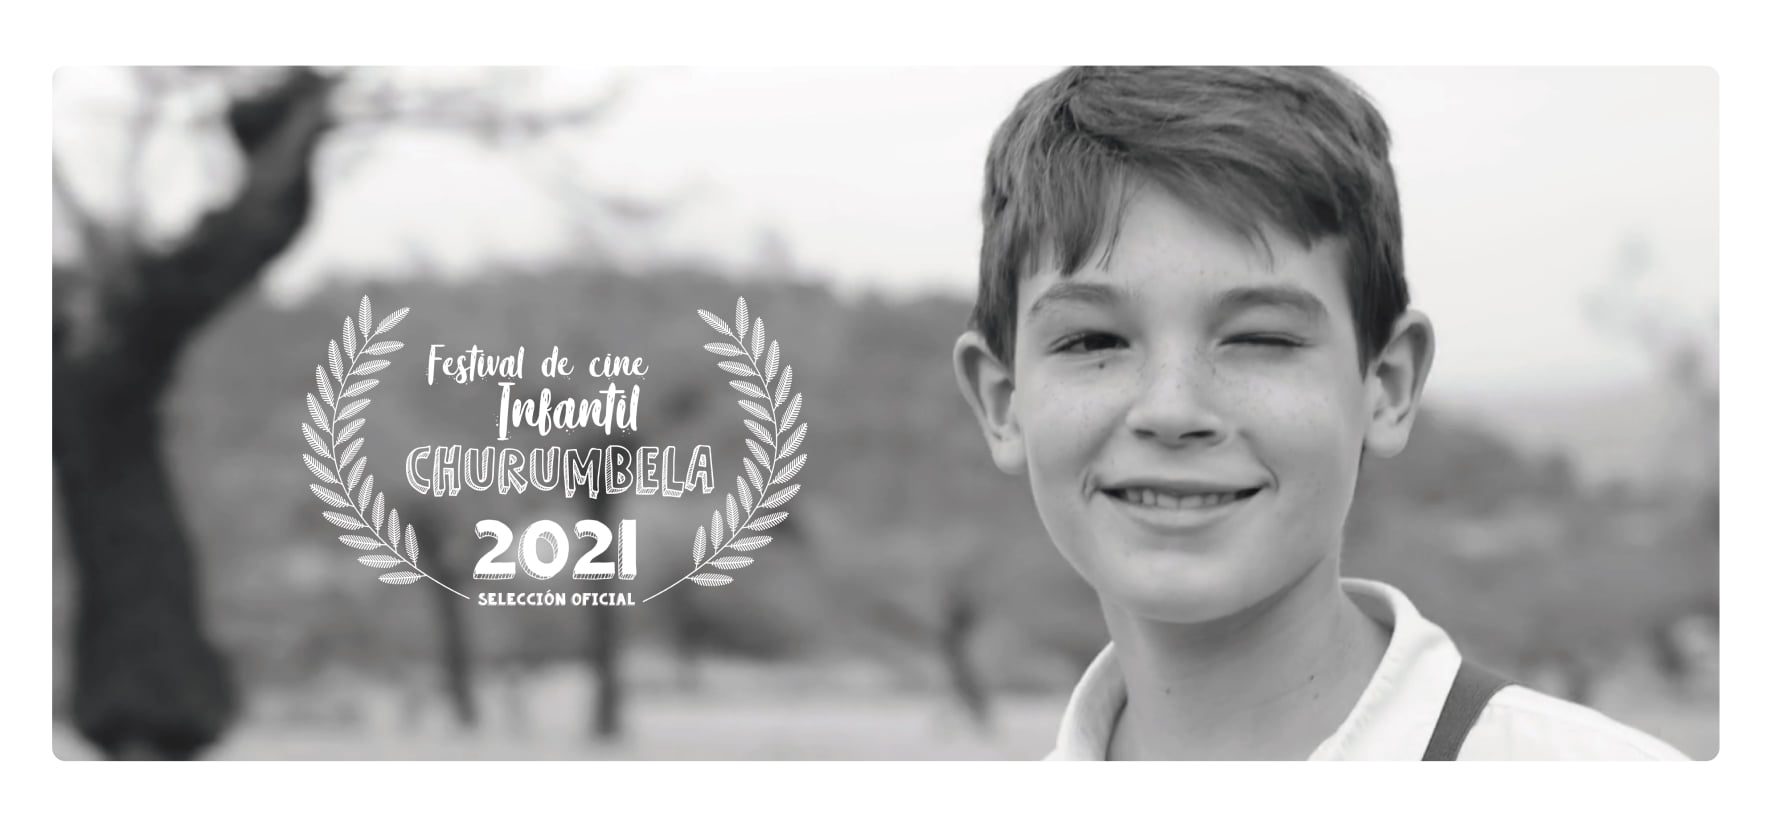 El cortometraje “Legado” estará en el Festival de Cine Infantil Churumbela